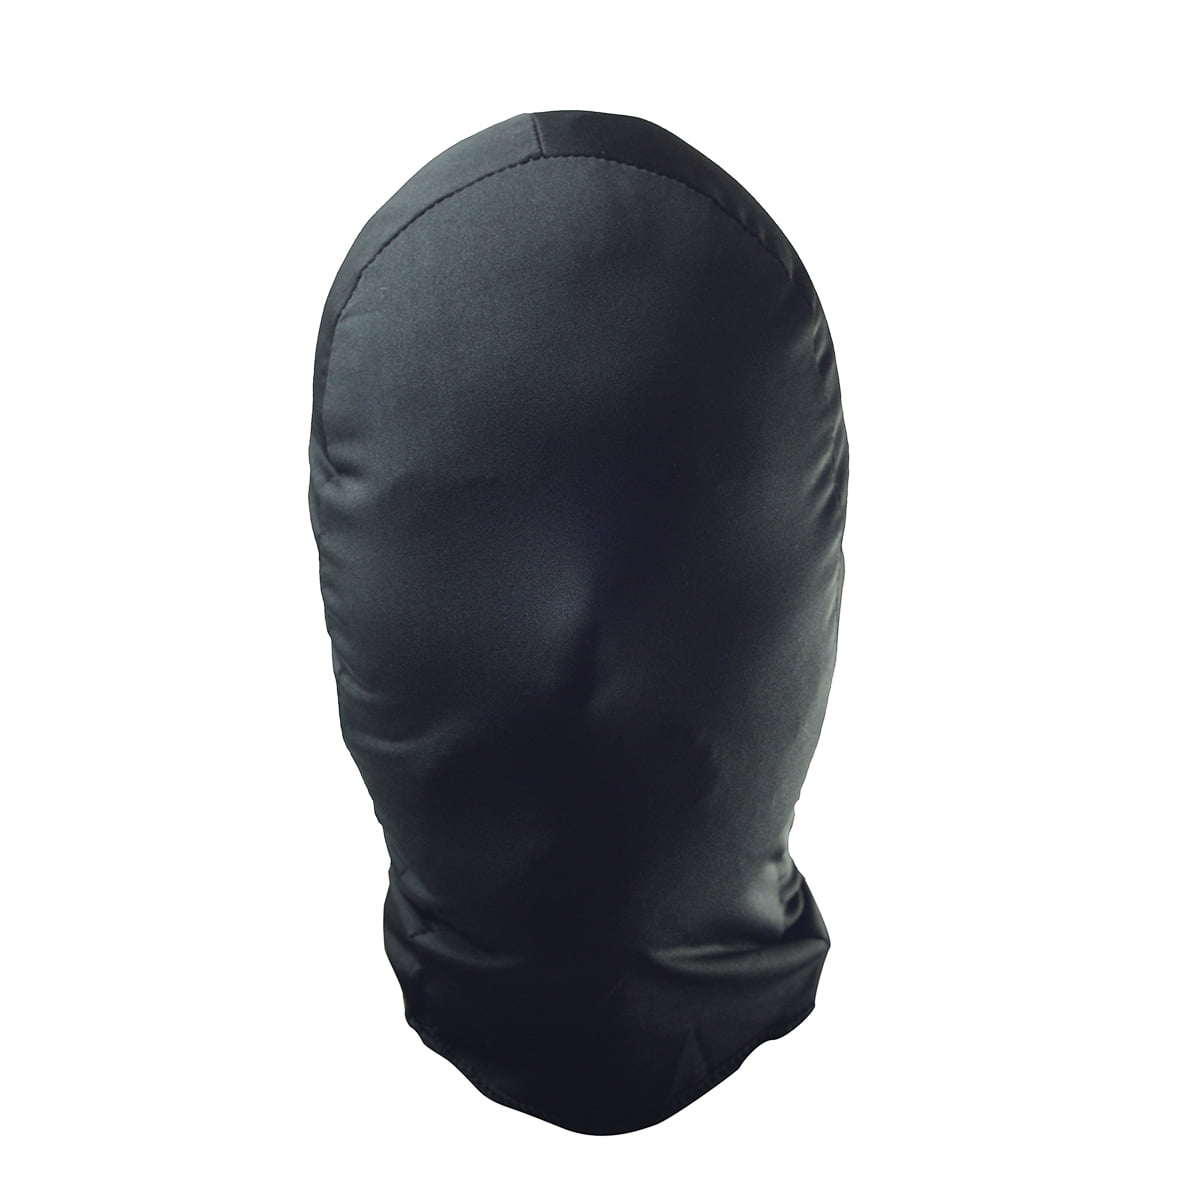 Zip Hard Ski Mask (Black) - Hardwear Style - Bronx, New York